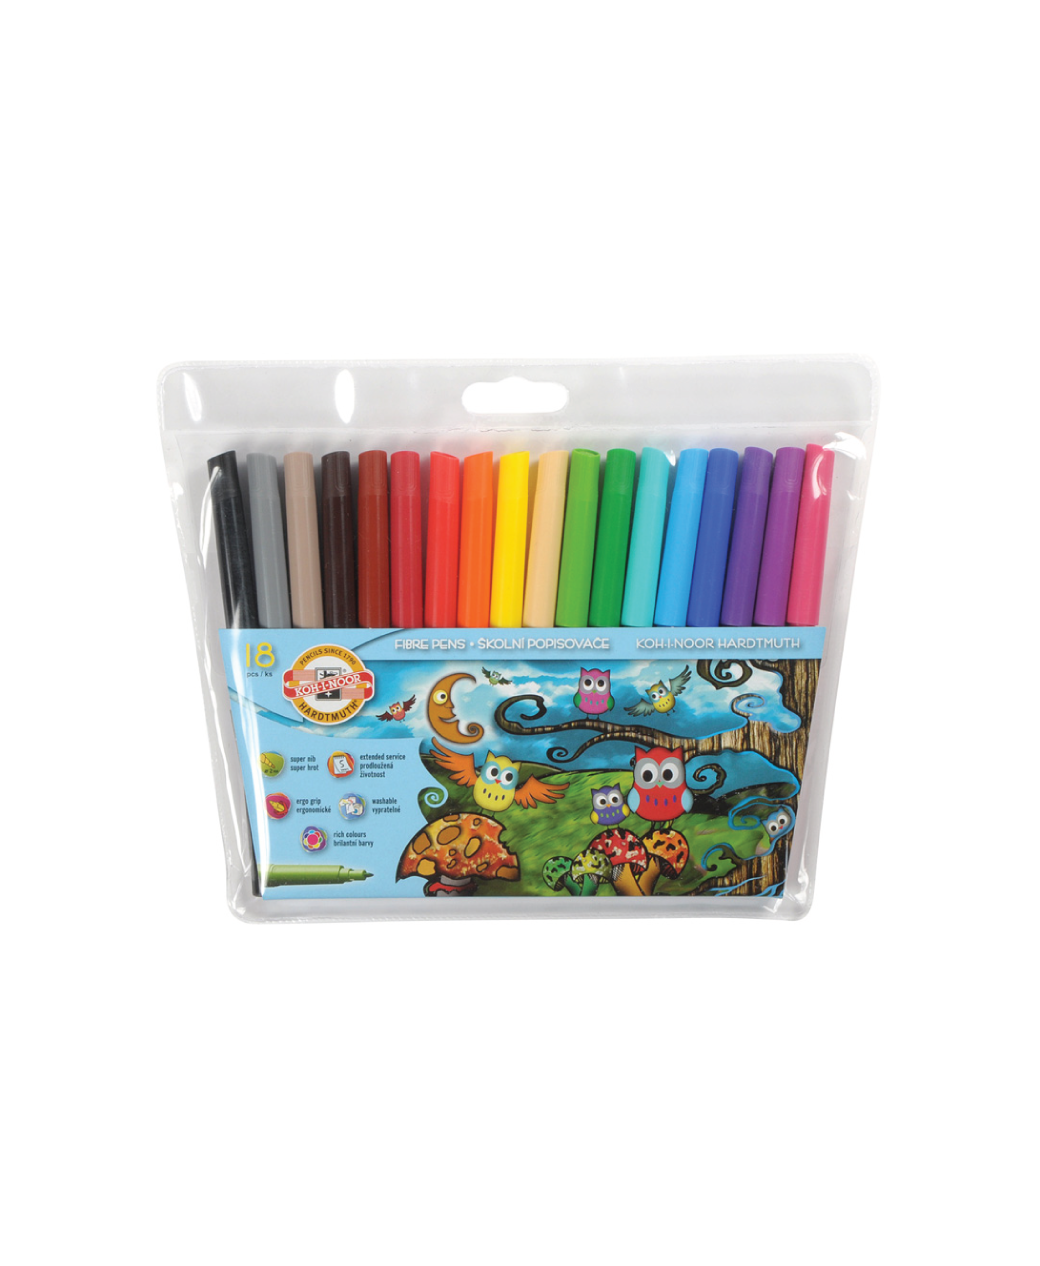 KS Marker Pen Set - 12 Colours